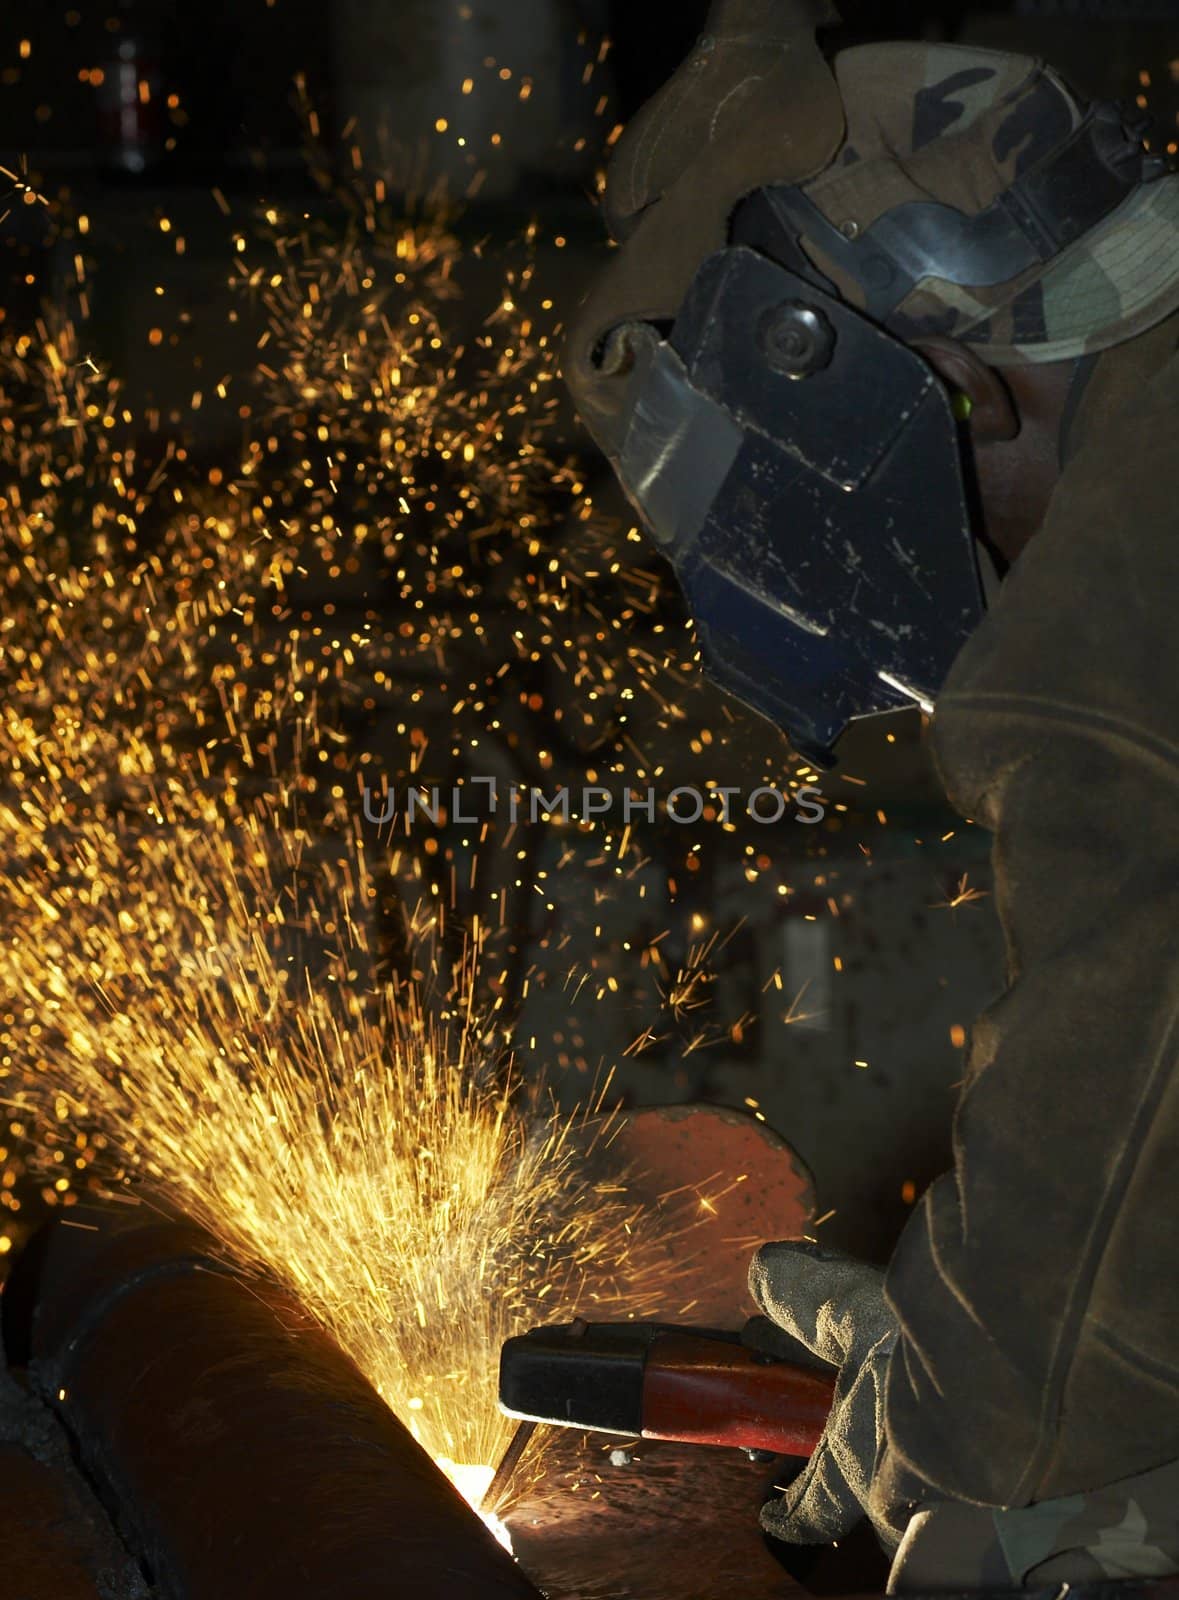 arc welder working at night